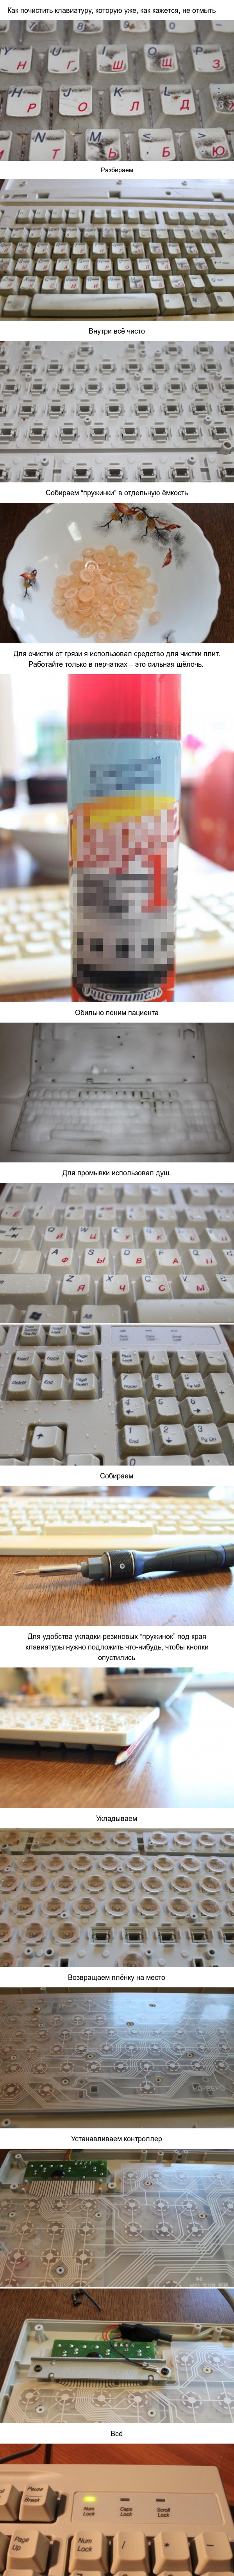 Как прочистить клавиатуру.